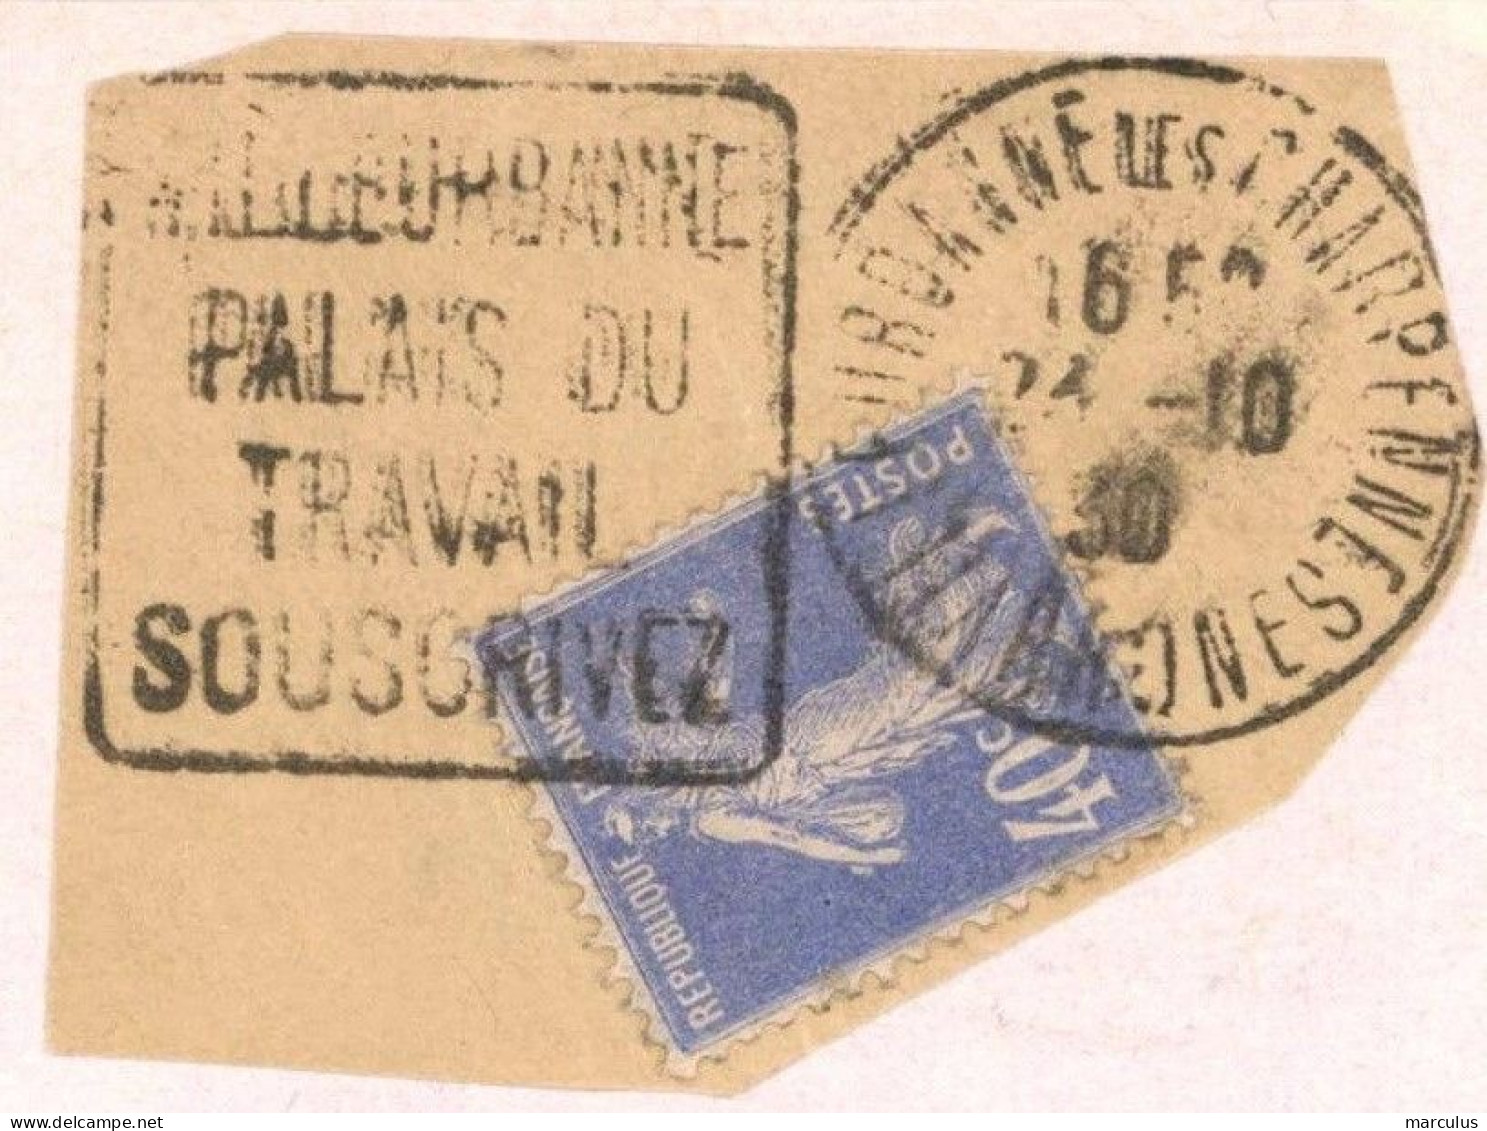 VILLEURBANNE LES CHARPENNES RHONE 1930 : Daguin : PALAIS DU TRAVAIL SOUSCRIVEZ  - Fragment - - Mechanical Postmarks (Advertisement)